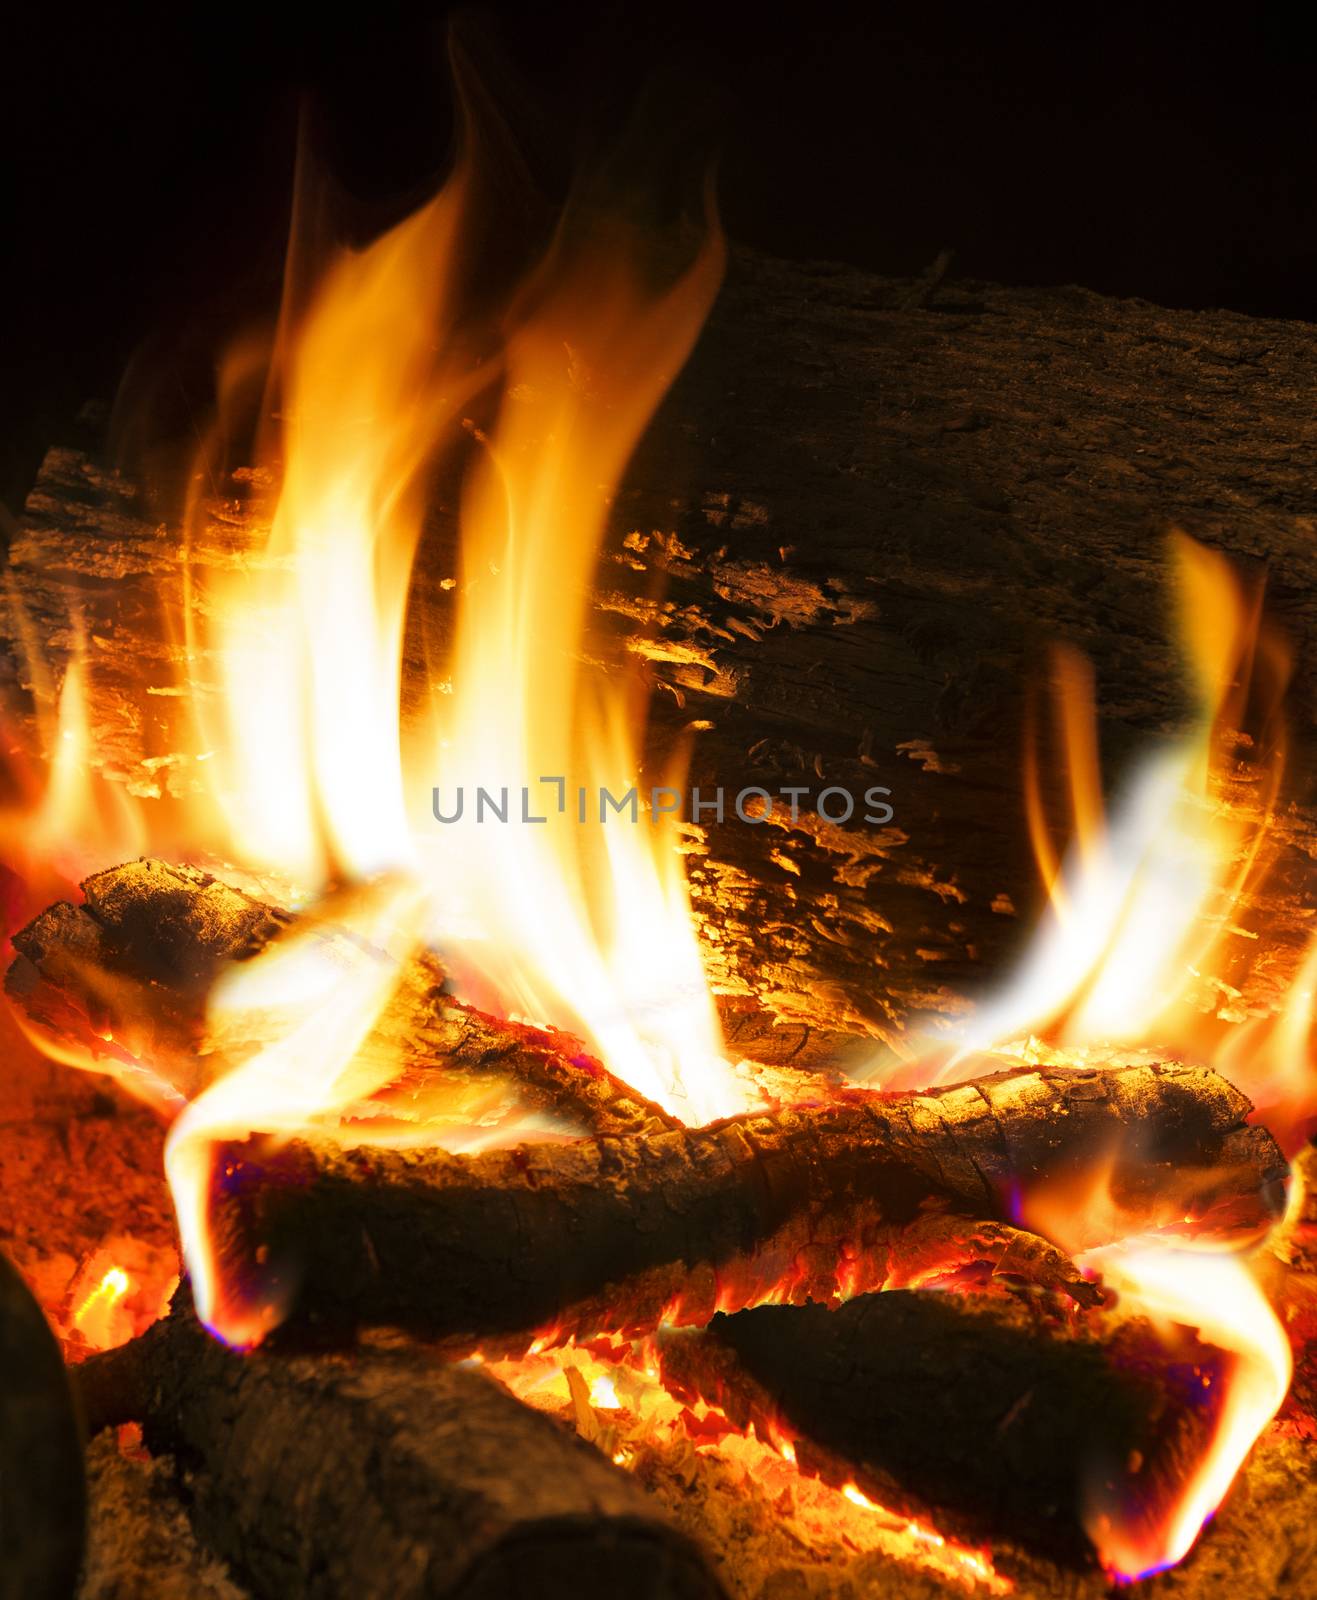  fireplace by carloscastilla